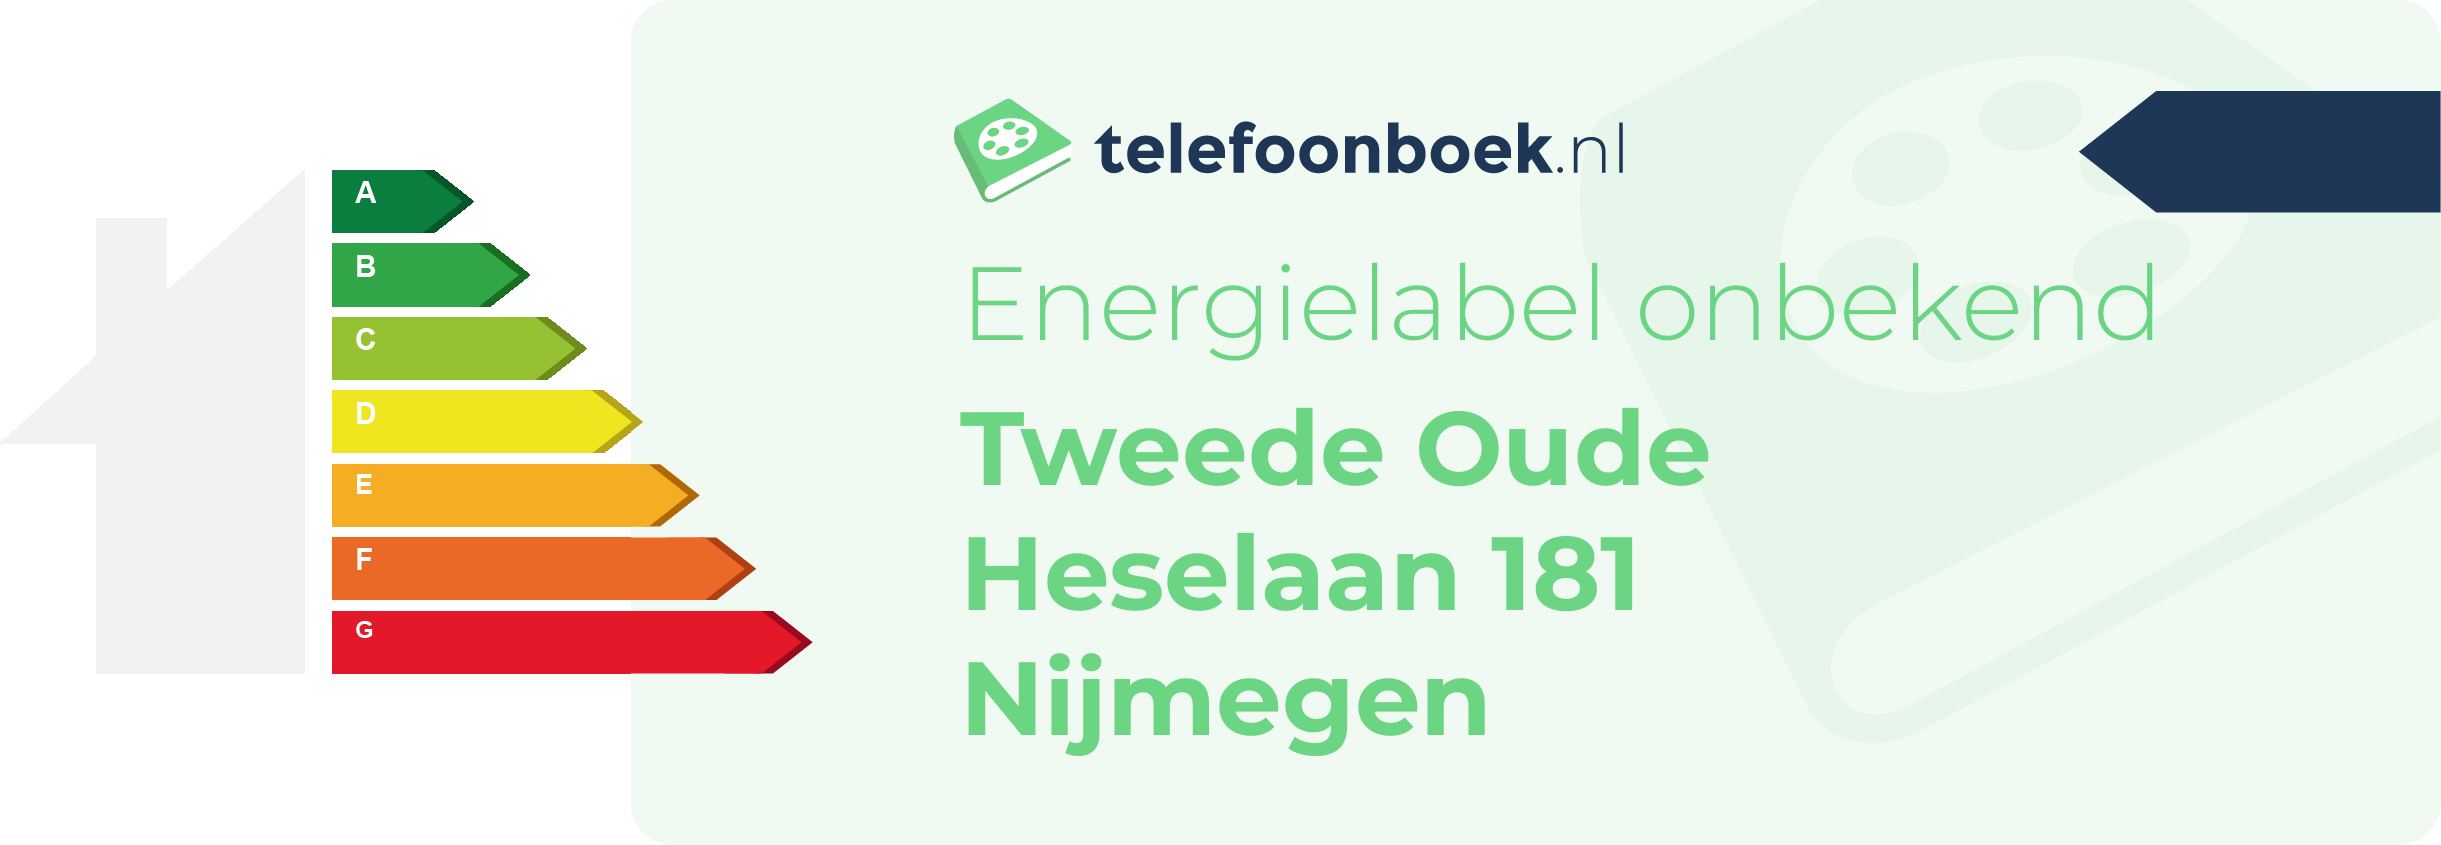 Energielabel Tweede Oude Heselaan 181 Nijmegen